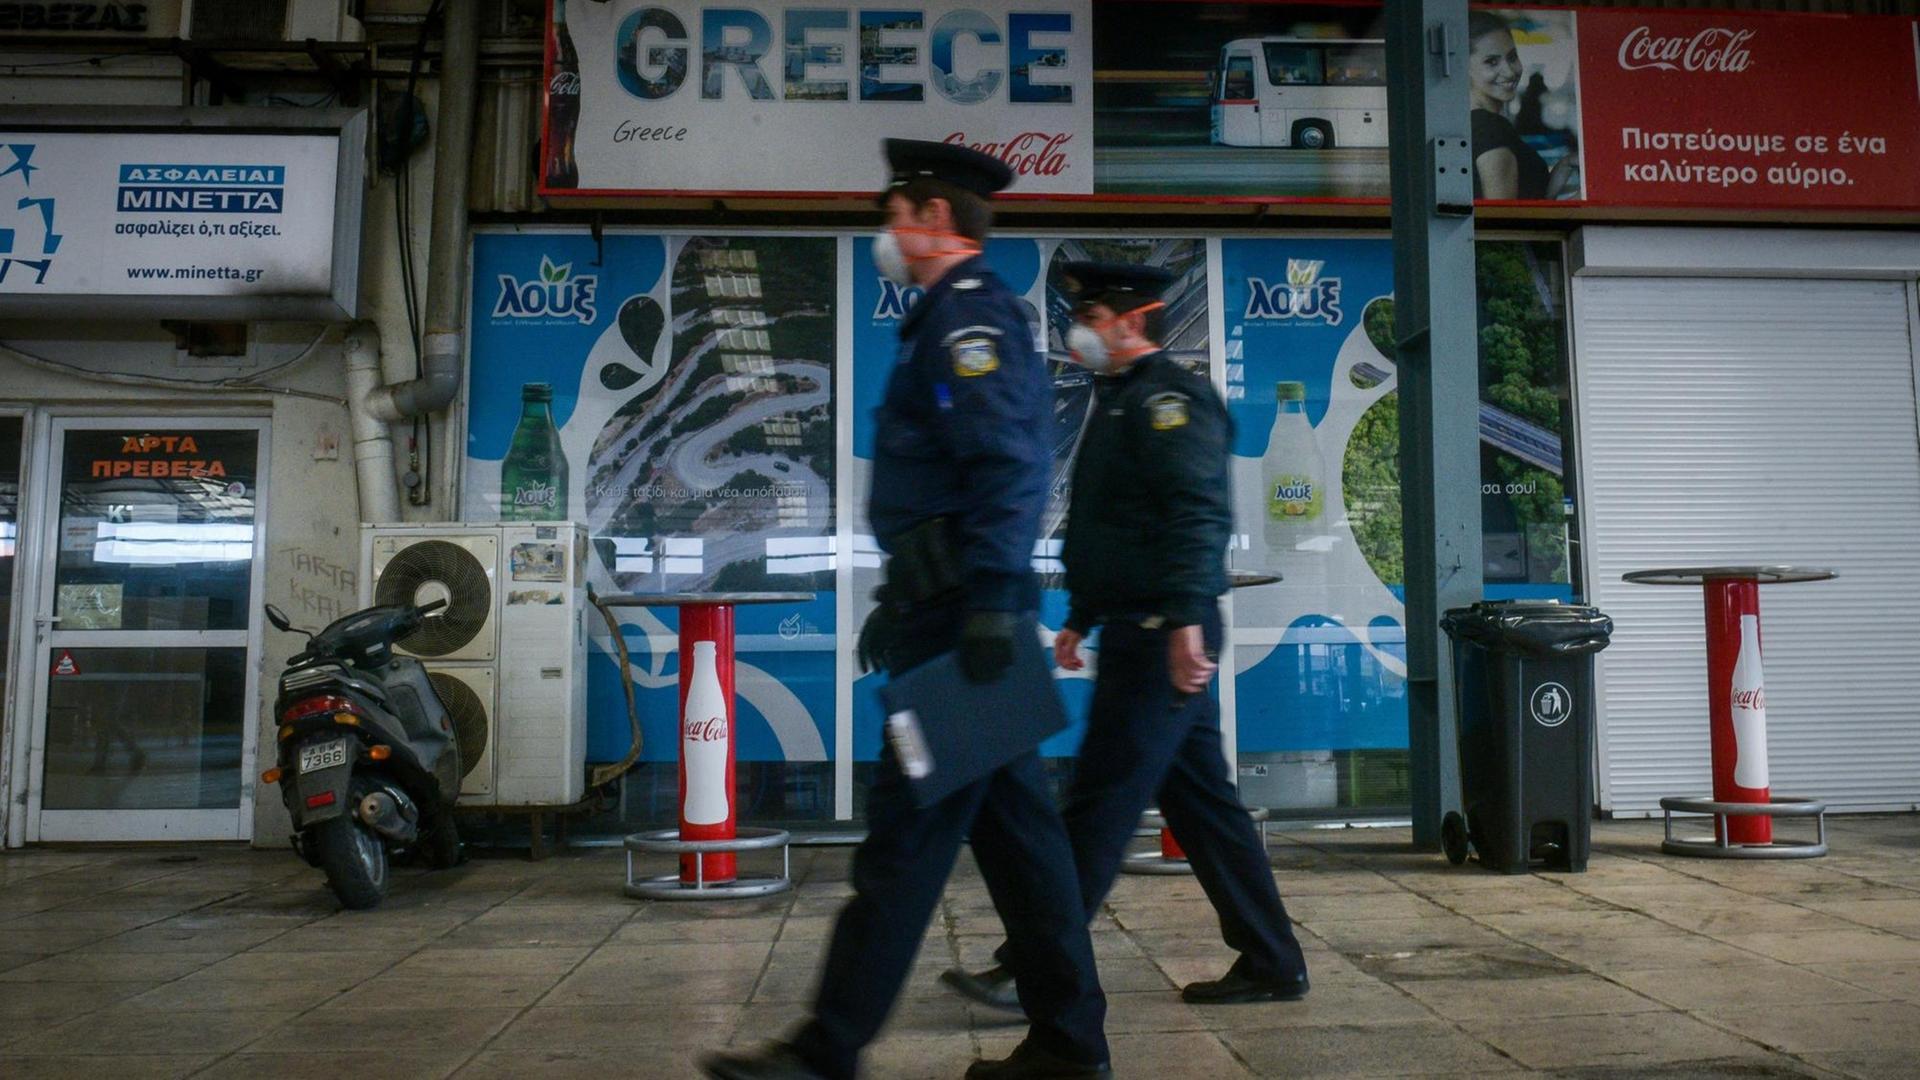 Griechenland - Ältere Ungeimpfte sollen monatliche Geldstrafe zahlen